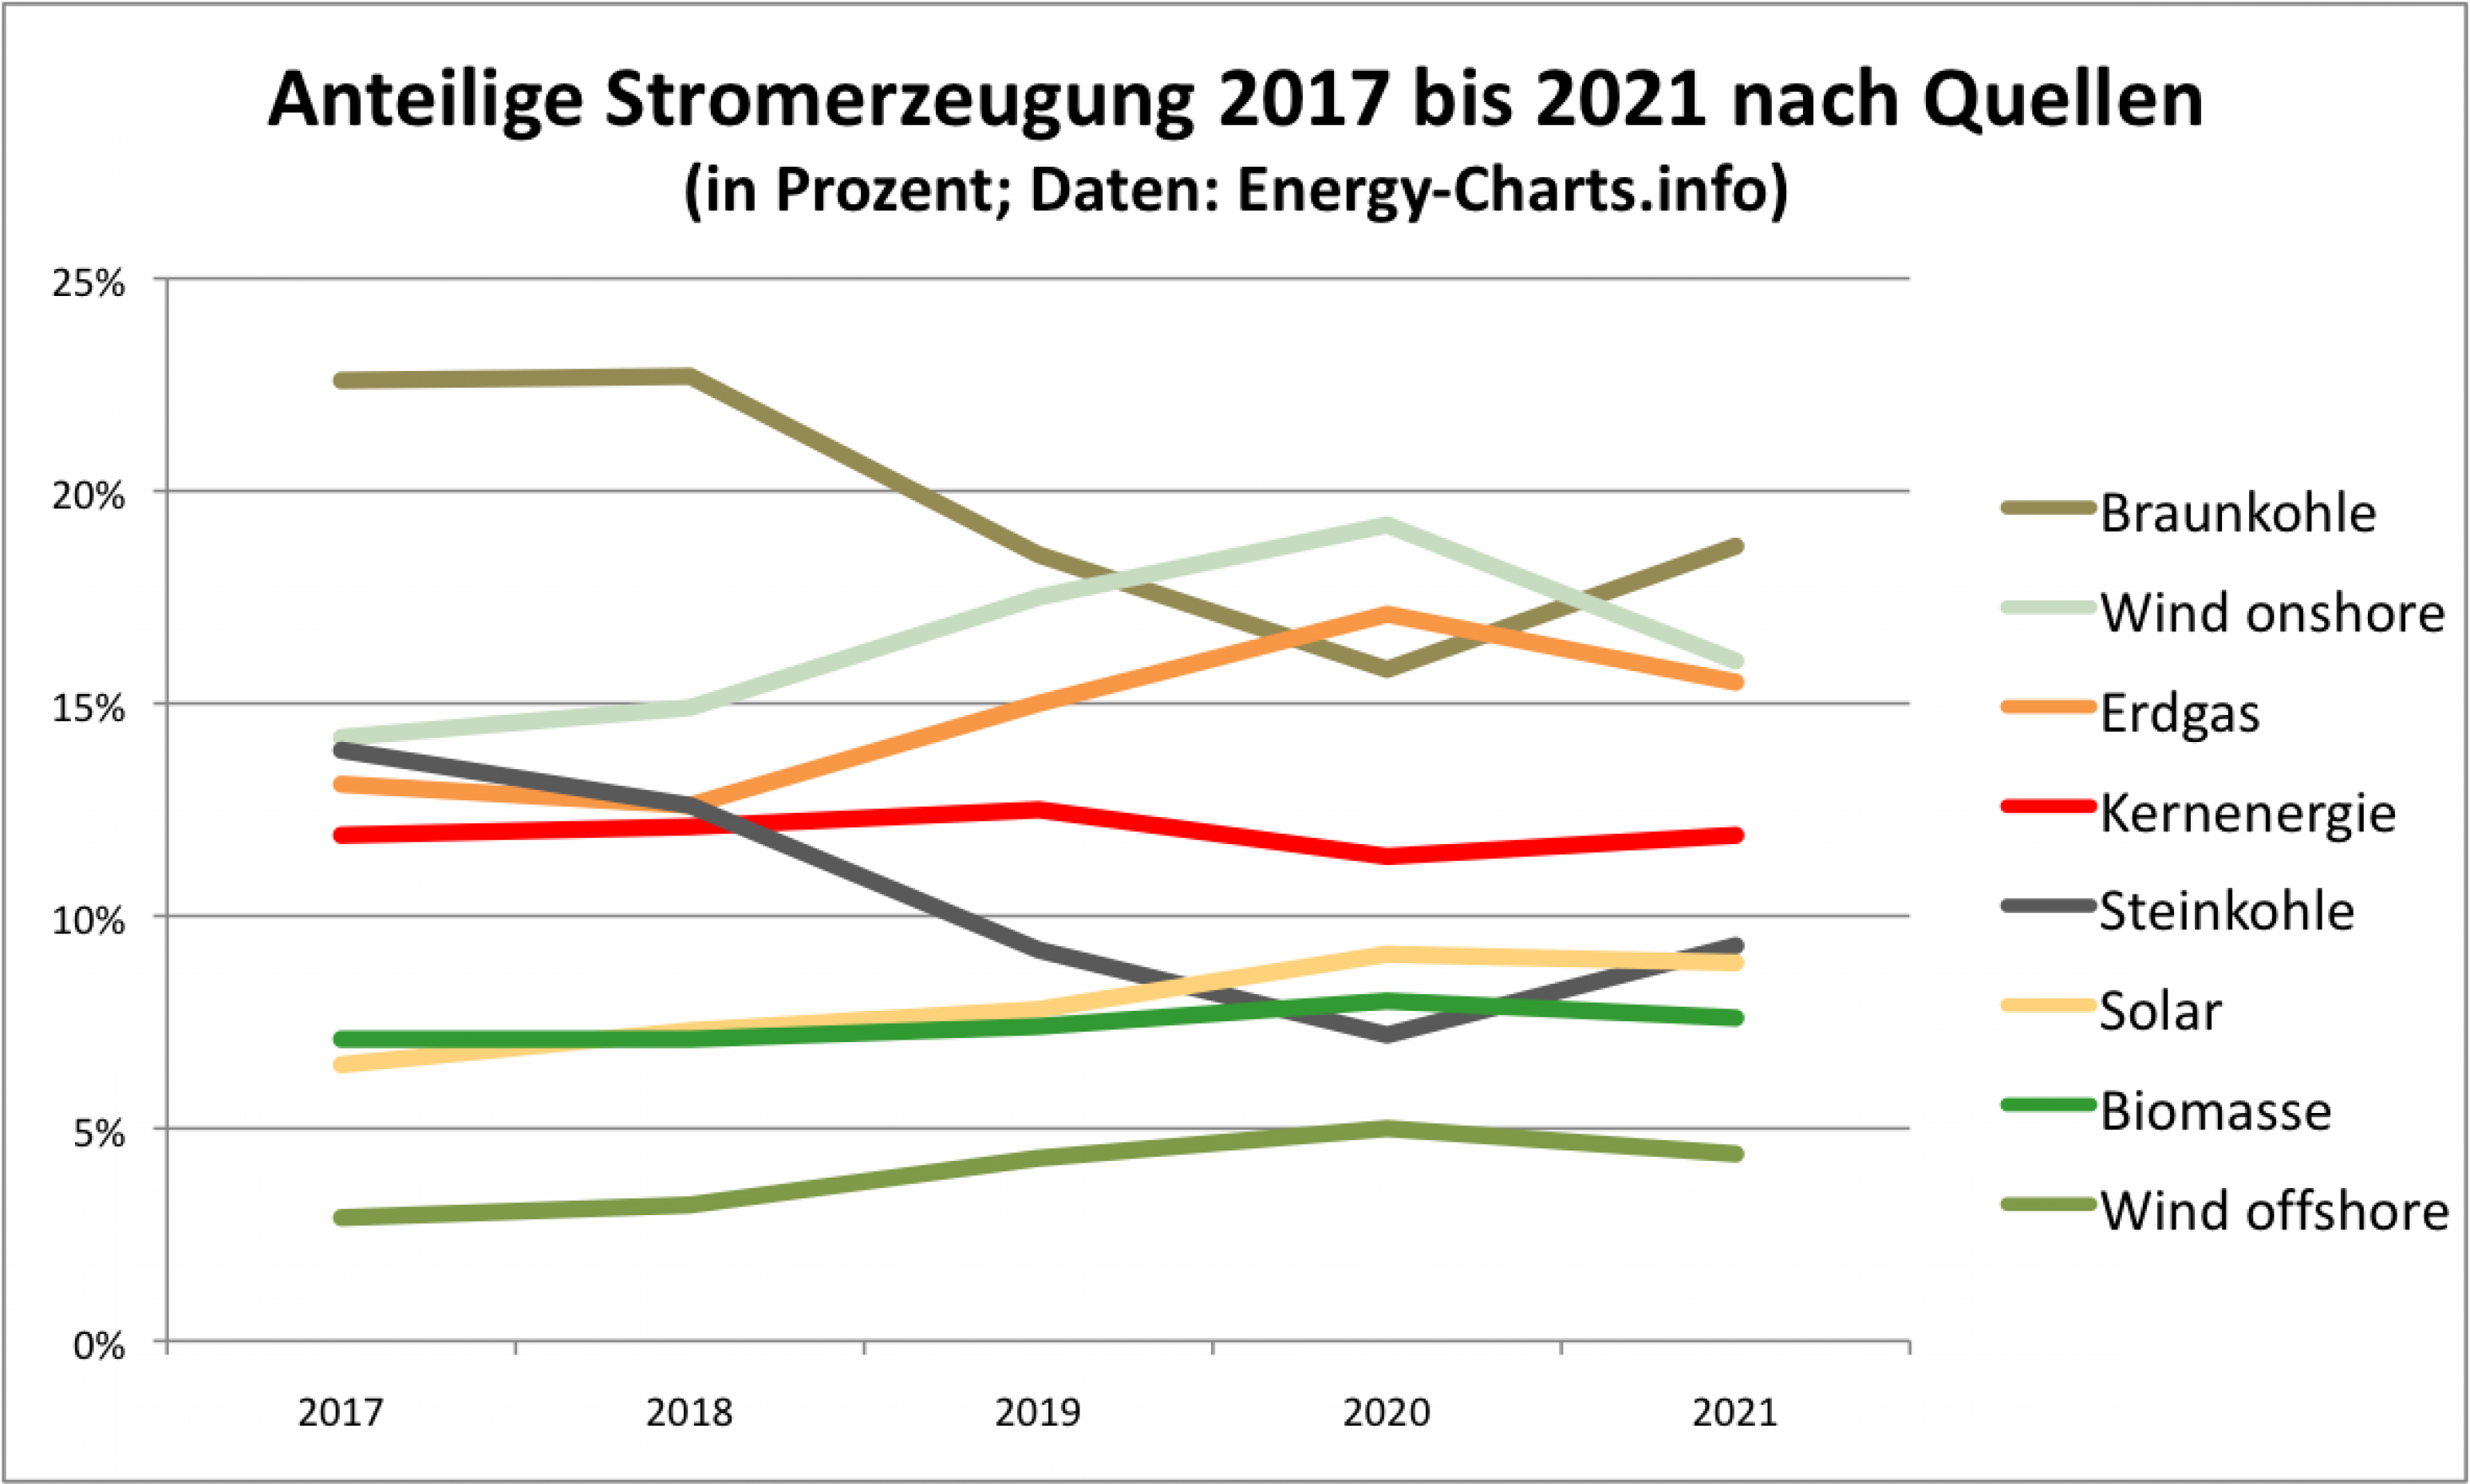 Die Grafik ist ein Liniendiagramm. Es zeigt, dass 2020 ein Ausnahmejahr war: Sonst lag stets die Braunkohle auf den obersten Platz in der Statisitik, 2020 aber nur auf Platz drei. Eine weitere Auffälligkeit ist der Rückgang der Steinkohle von  fast 15 Prozent 2017 auf weniger als 10 Prozent im Jahr 2021.